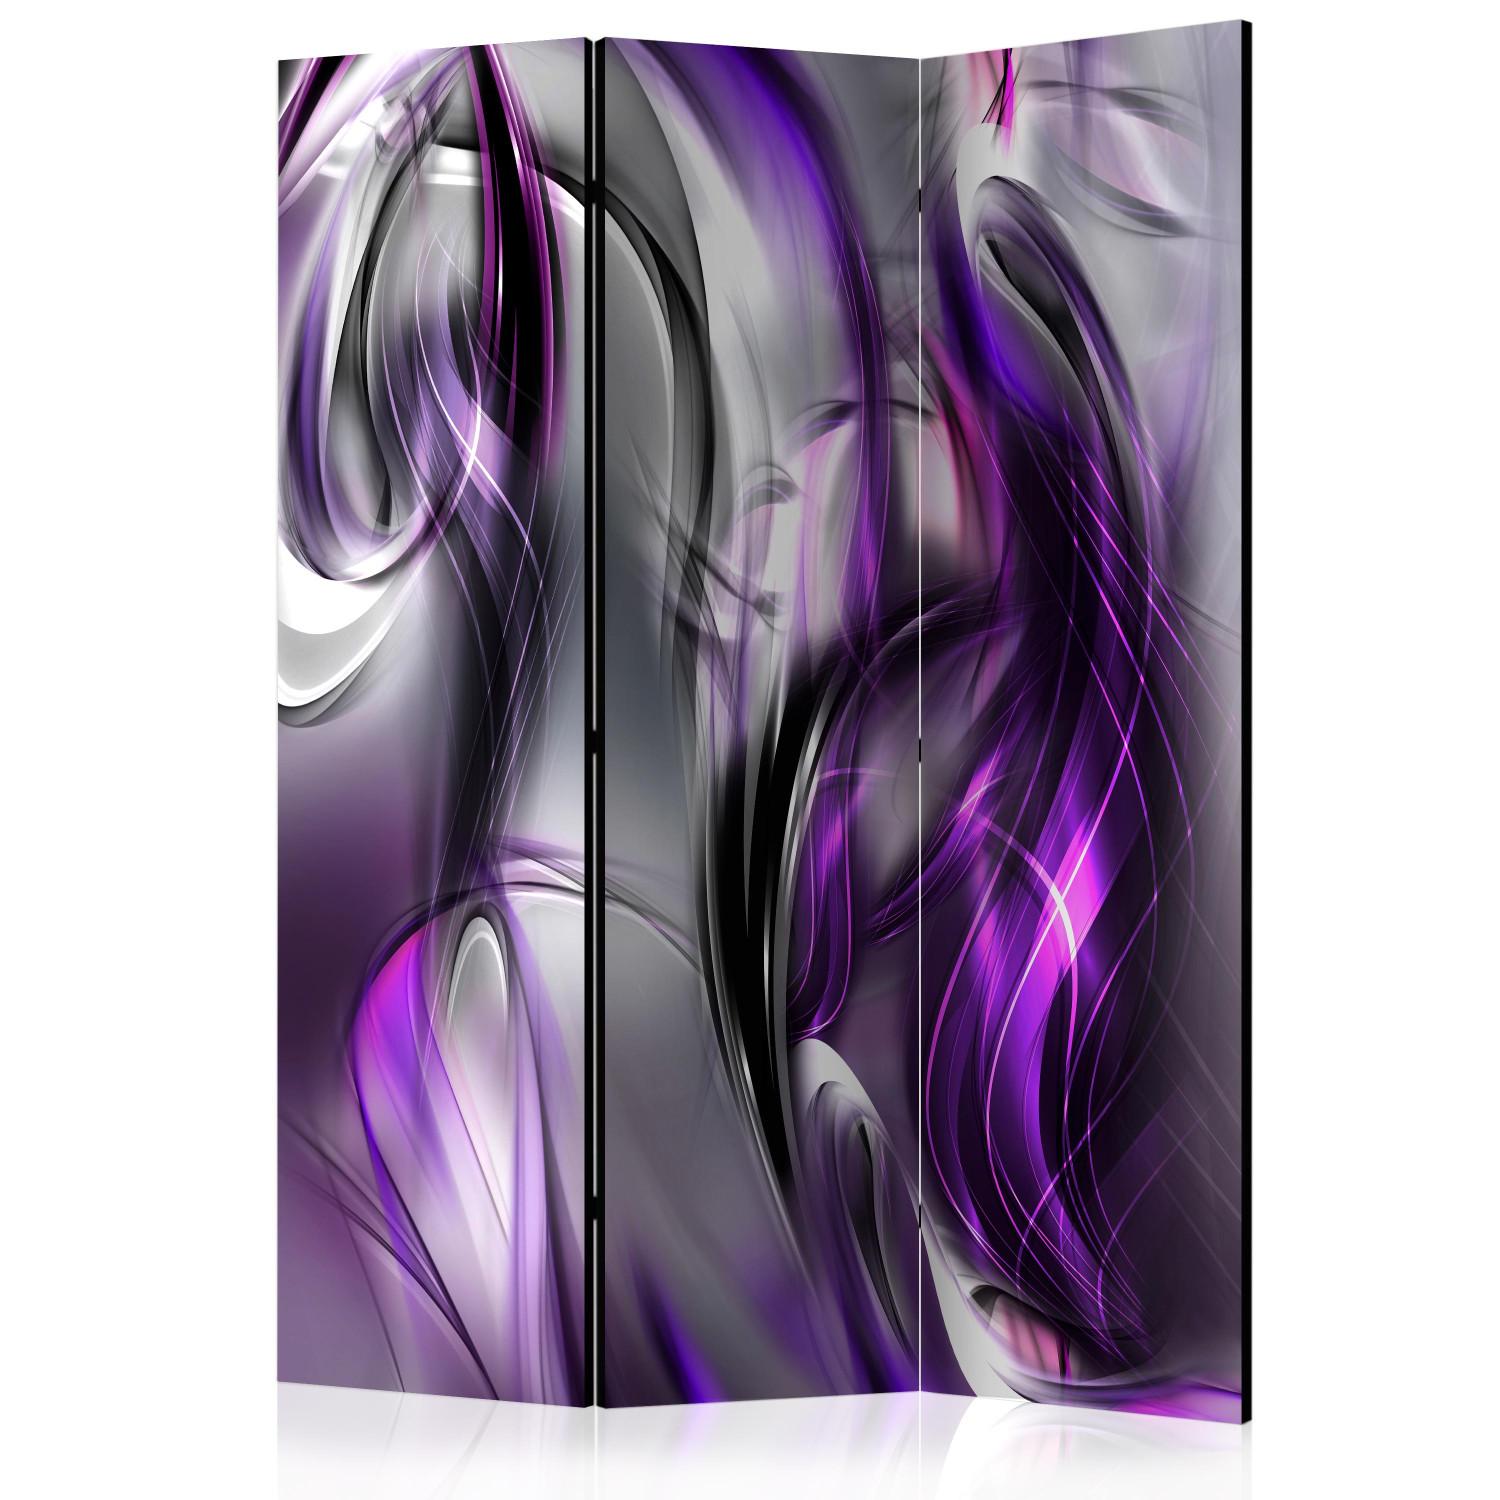 Biombo decorativo Girar púrpura - flor en espiral